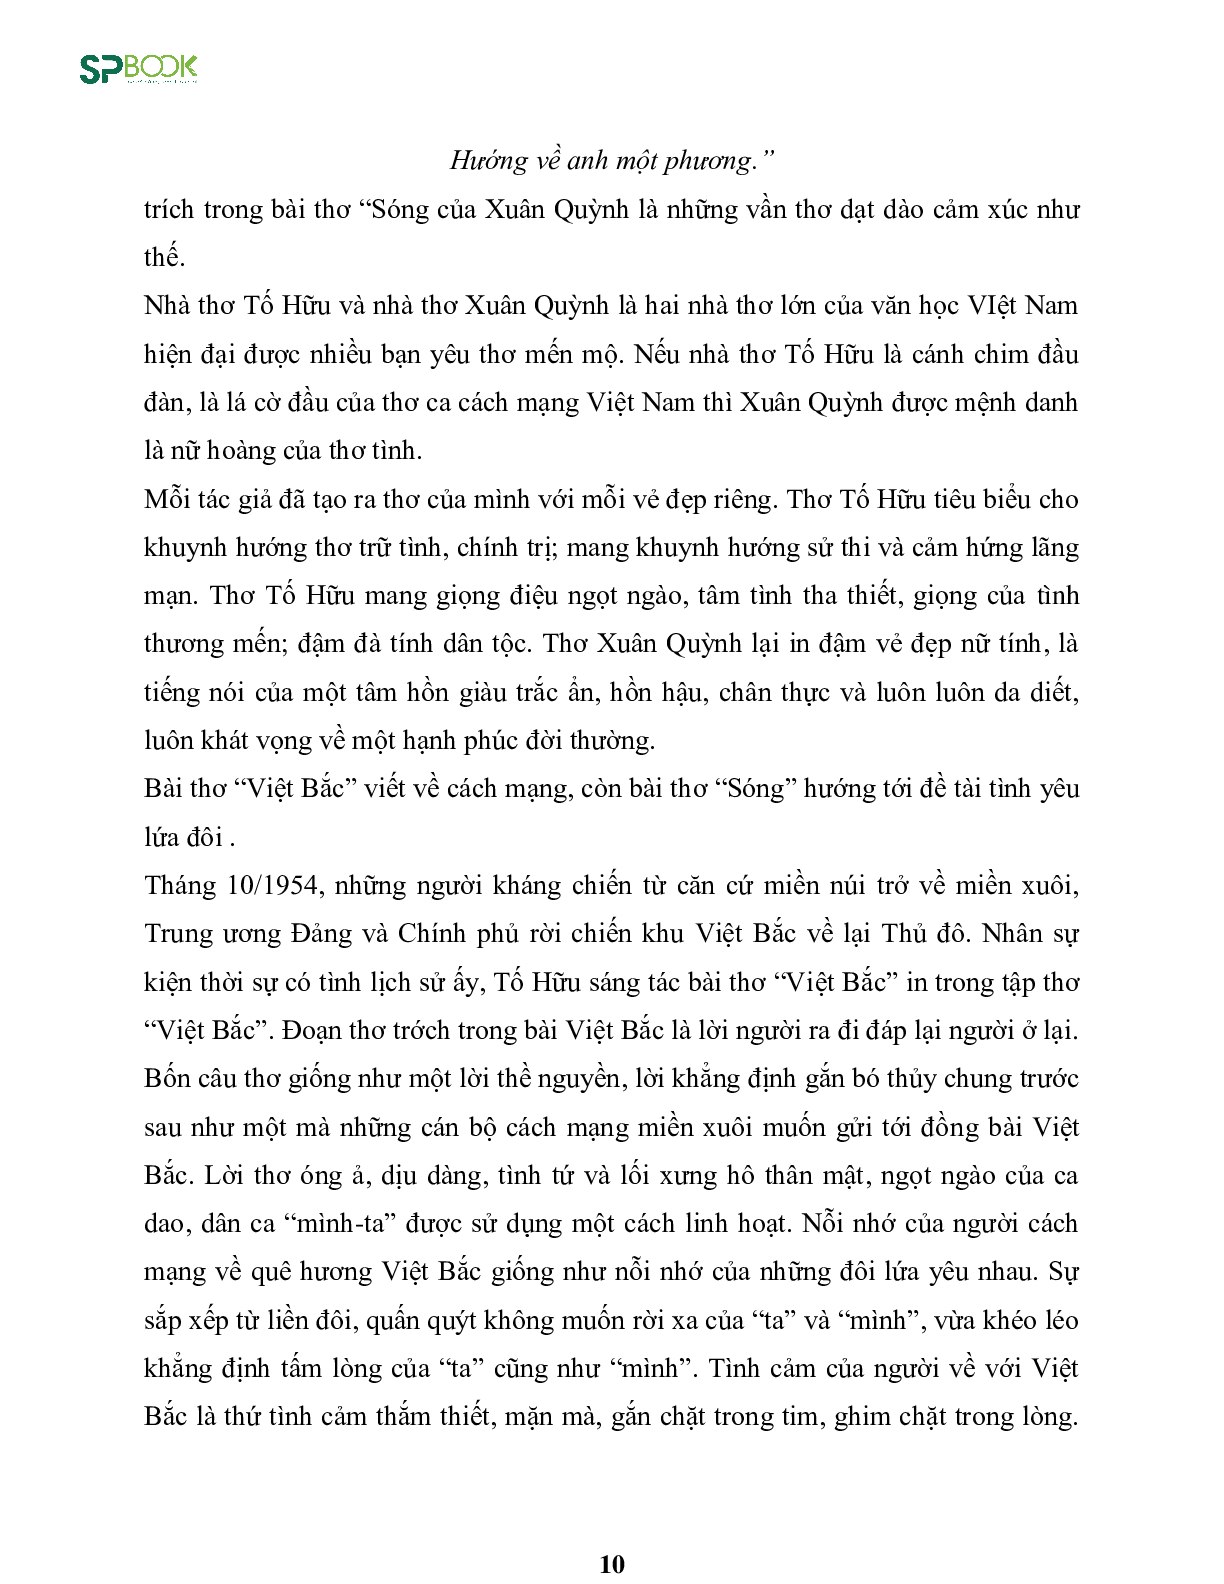 Kiến thức cơ bản và những dạng đề thi về bài Việt Bắc - Tố Hữu Văn 12 (trang 10)